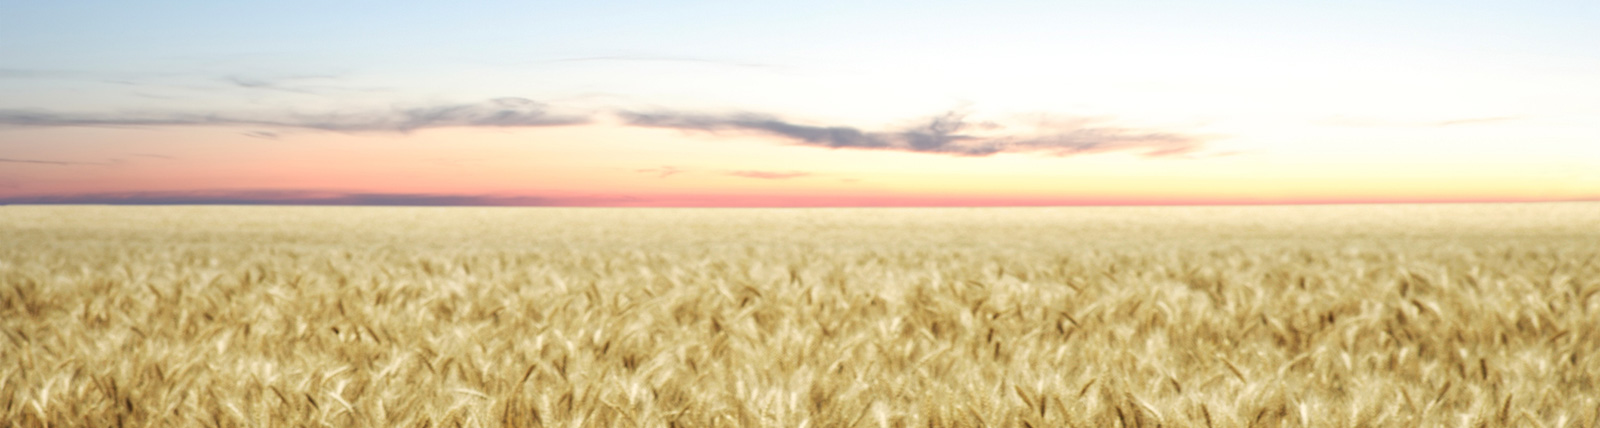 field of golden wheat against a sun set